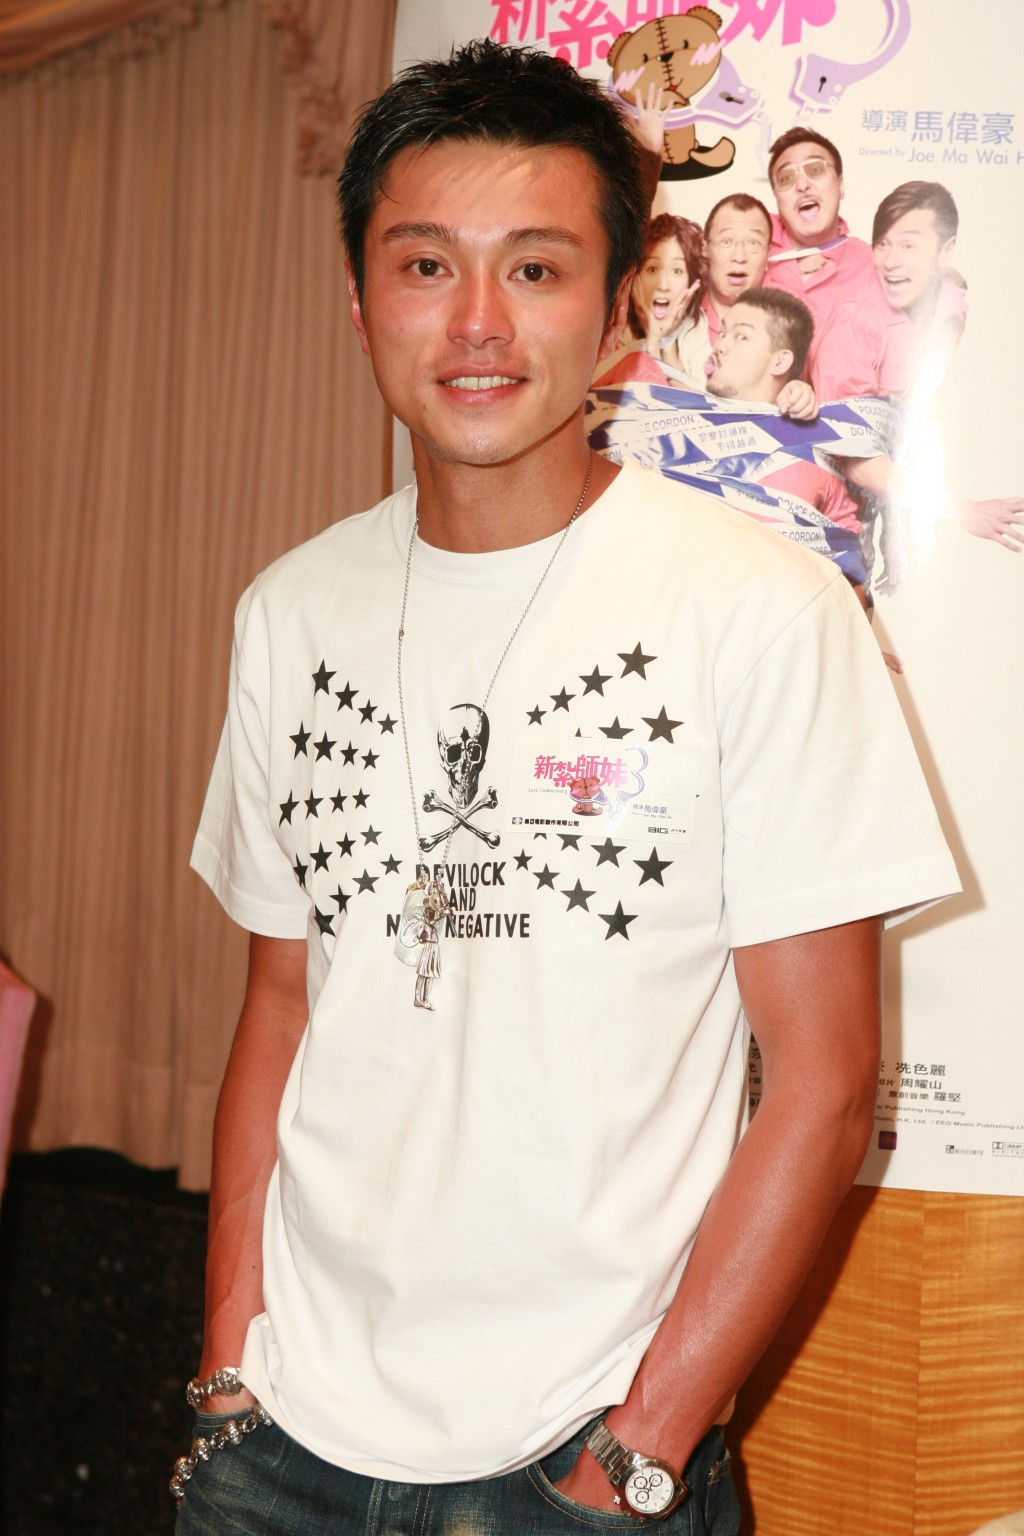 模特兒出身的黃浩然當年被導演杜琪峰發掘轉型做演員。